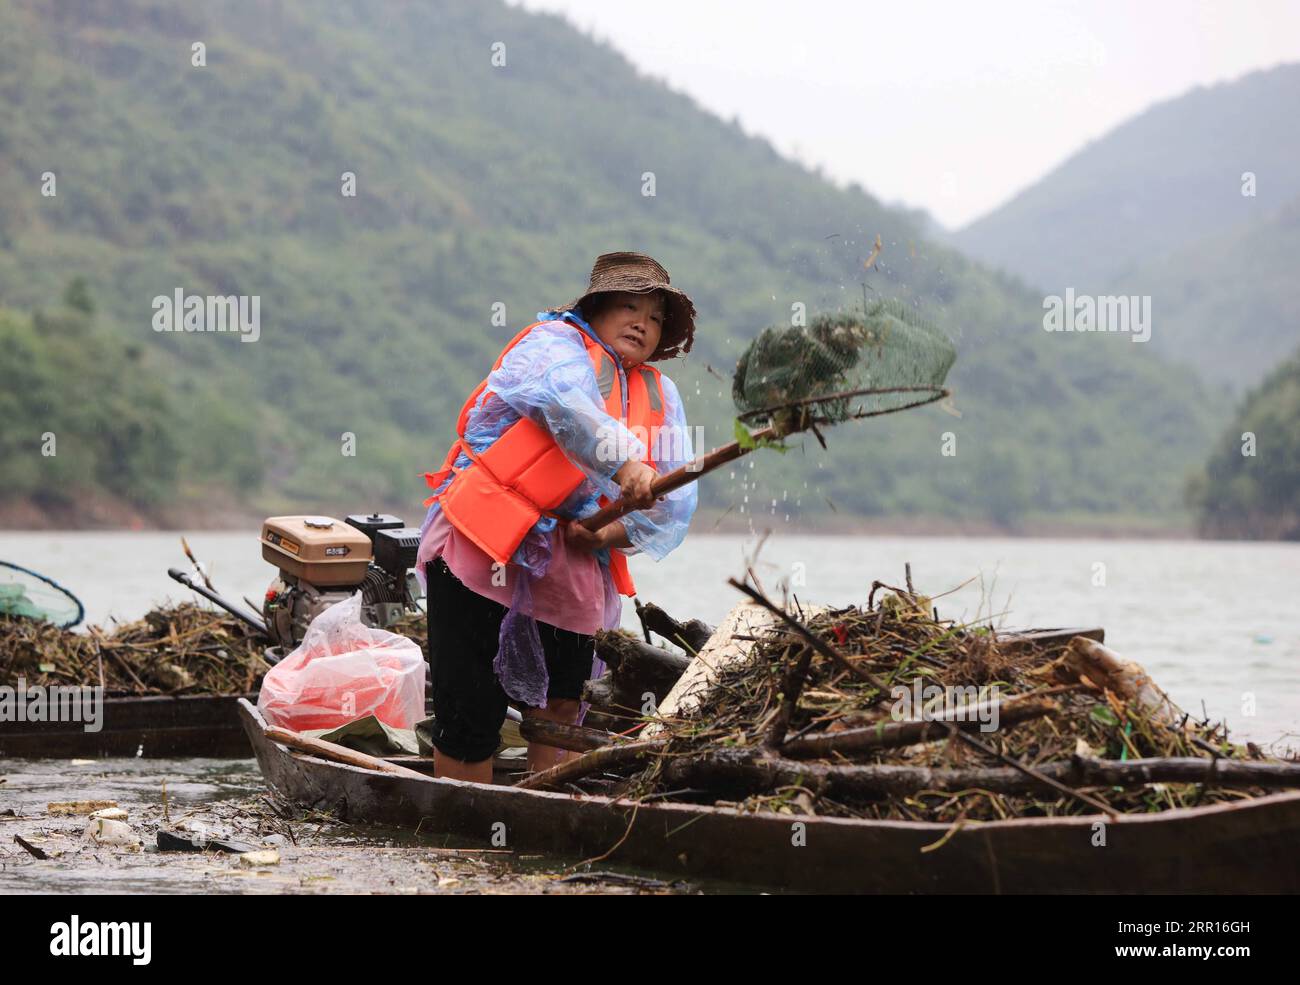 200906 -- ZHANGJIAJIE, 6 settembre 2020 -- Un abitante del villaggio ripulisce la flotage dal fiume Maoyan nel distretto di Yongding della città di Zhangjiajie, provincia centrale di Hunan della Cina, 6 settembre 2020. La città ha organizzato gente per ripulire regolarmente il fiume per mantenere il fiume senza ostacoli. Foto di /Xinhua CHINA-HUNAN-ZHANGJIAJIE-RIVER-CLEARING WuxYongbing PUBLICATIONxNOTxINxCHN Foto Stock